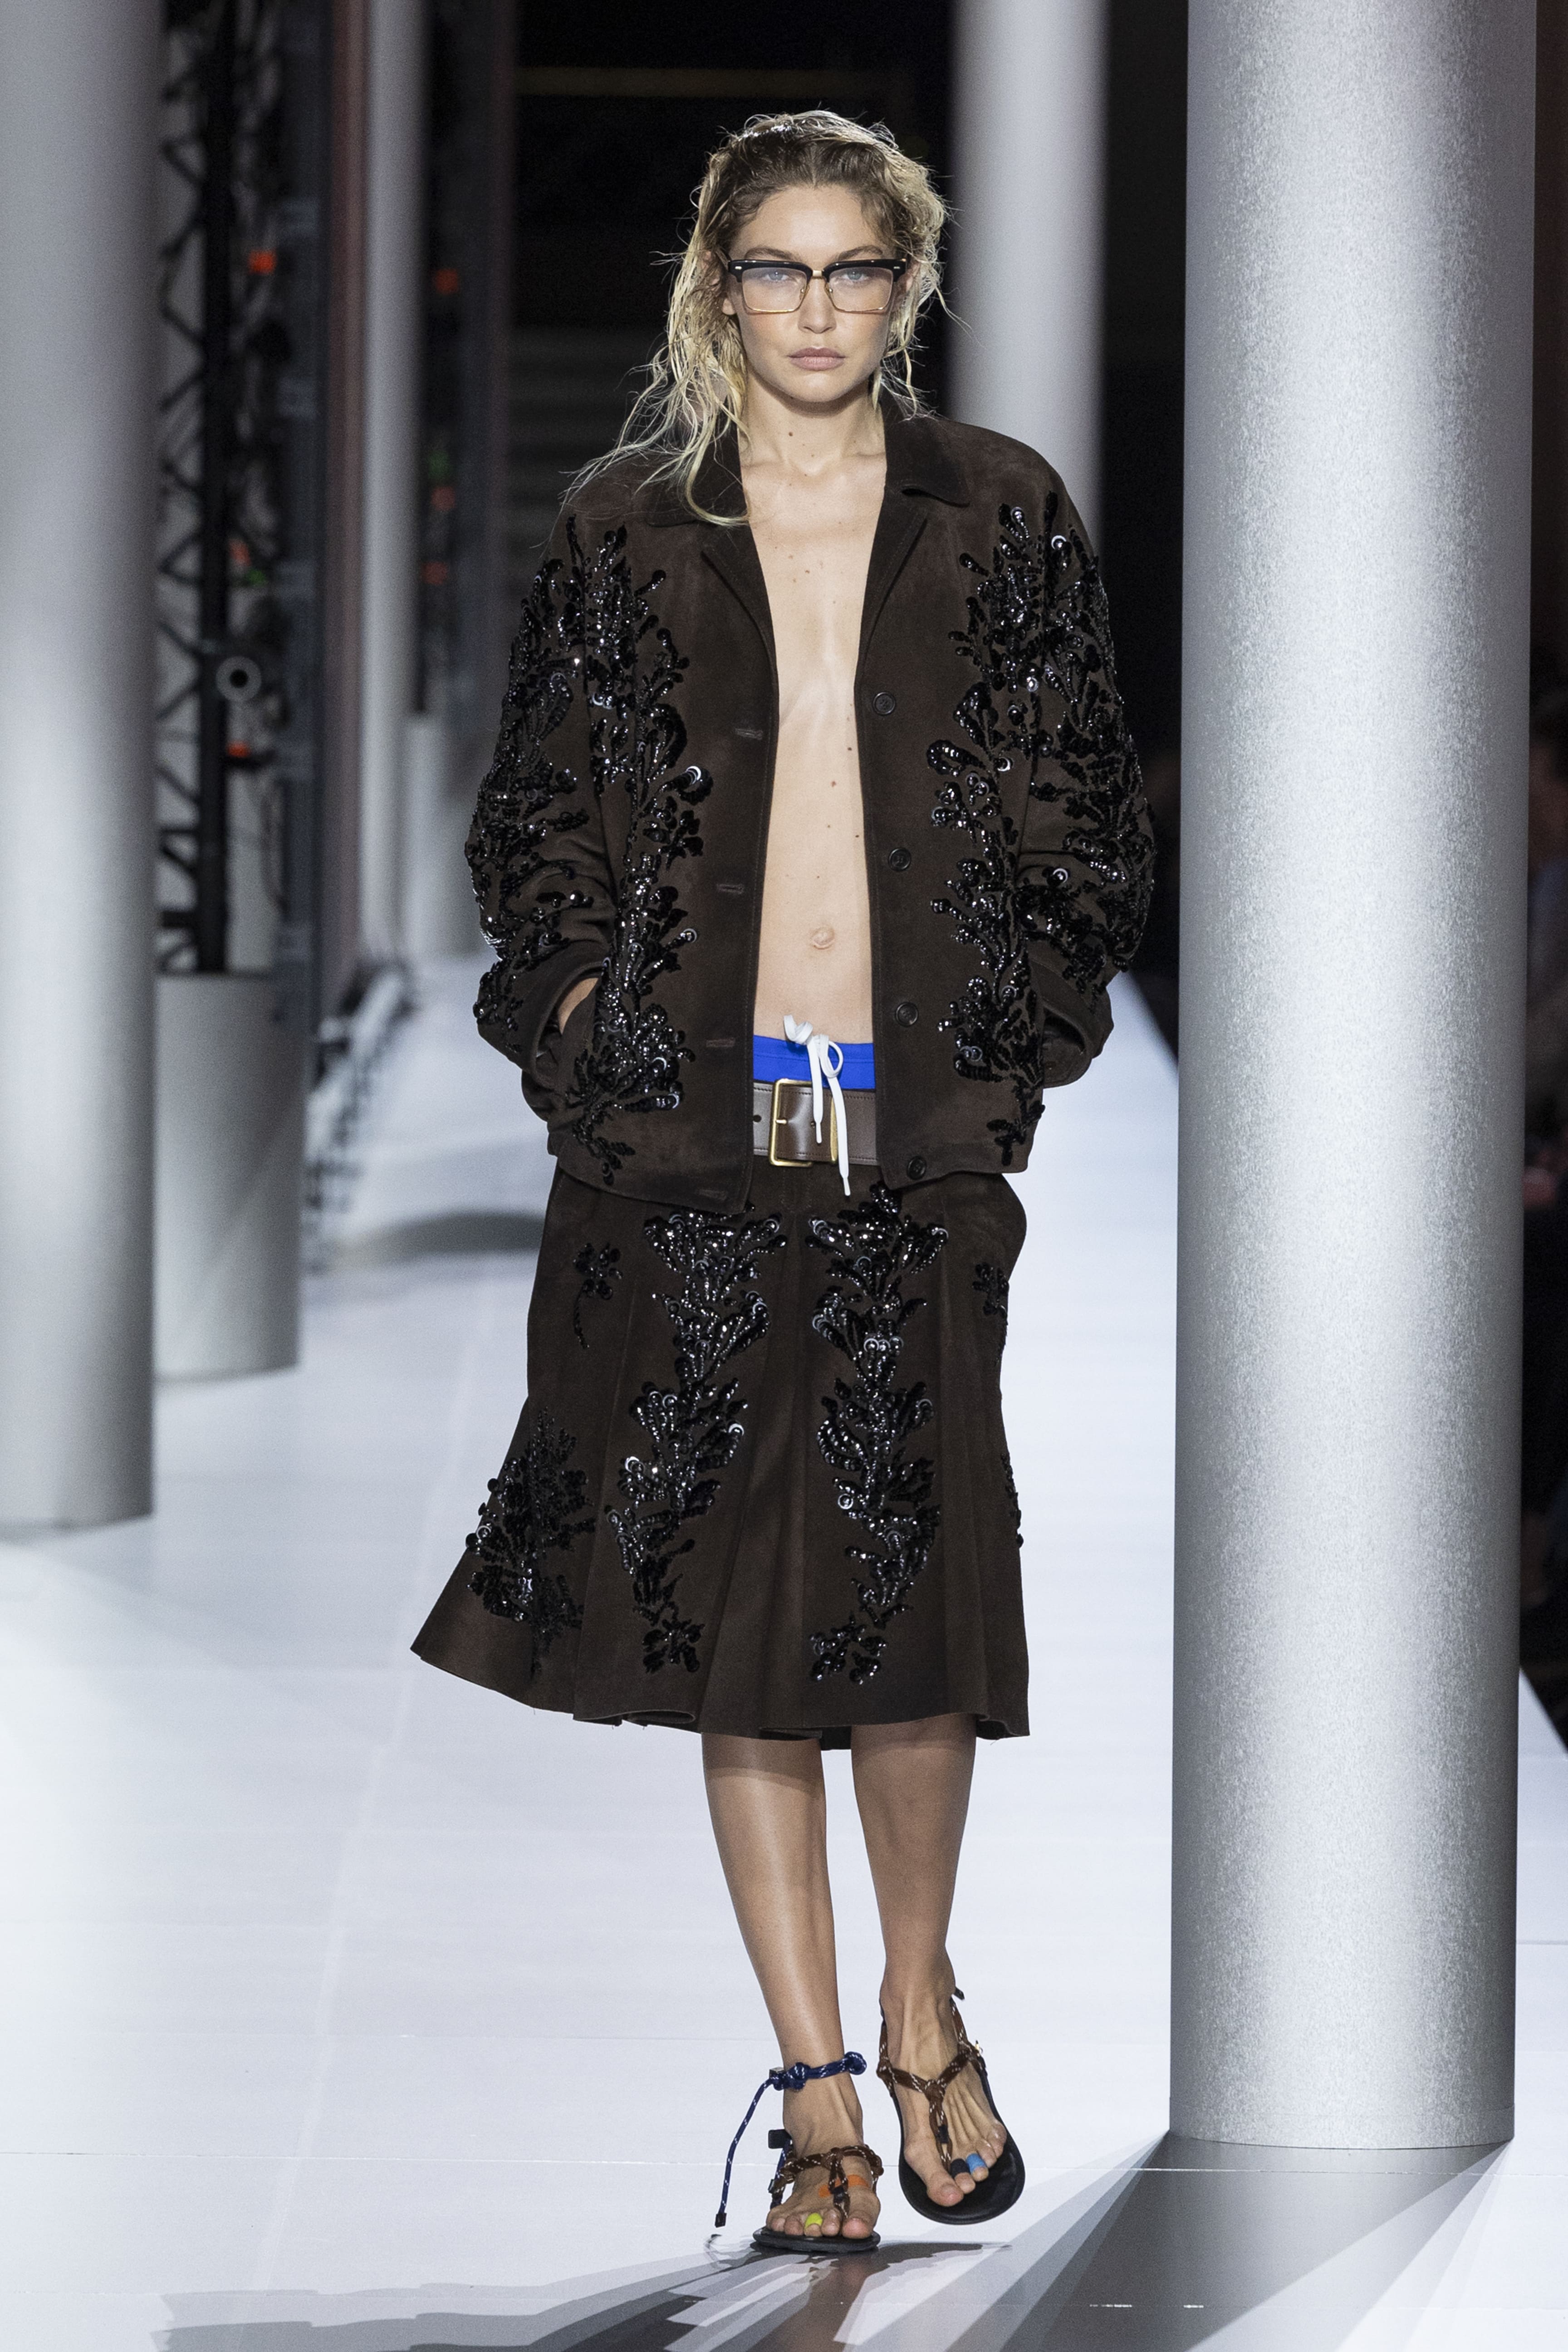  Троянди на сукнях, сиві Хелен Міррен та Енді МакДауелл на подіумі та прощальна колекція Сари Бартон для Alexander McQueen: подробиці Paris Fashion Week - фото 36